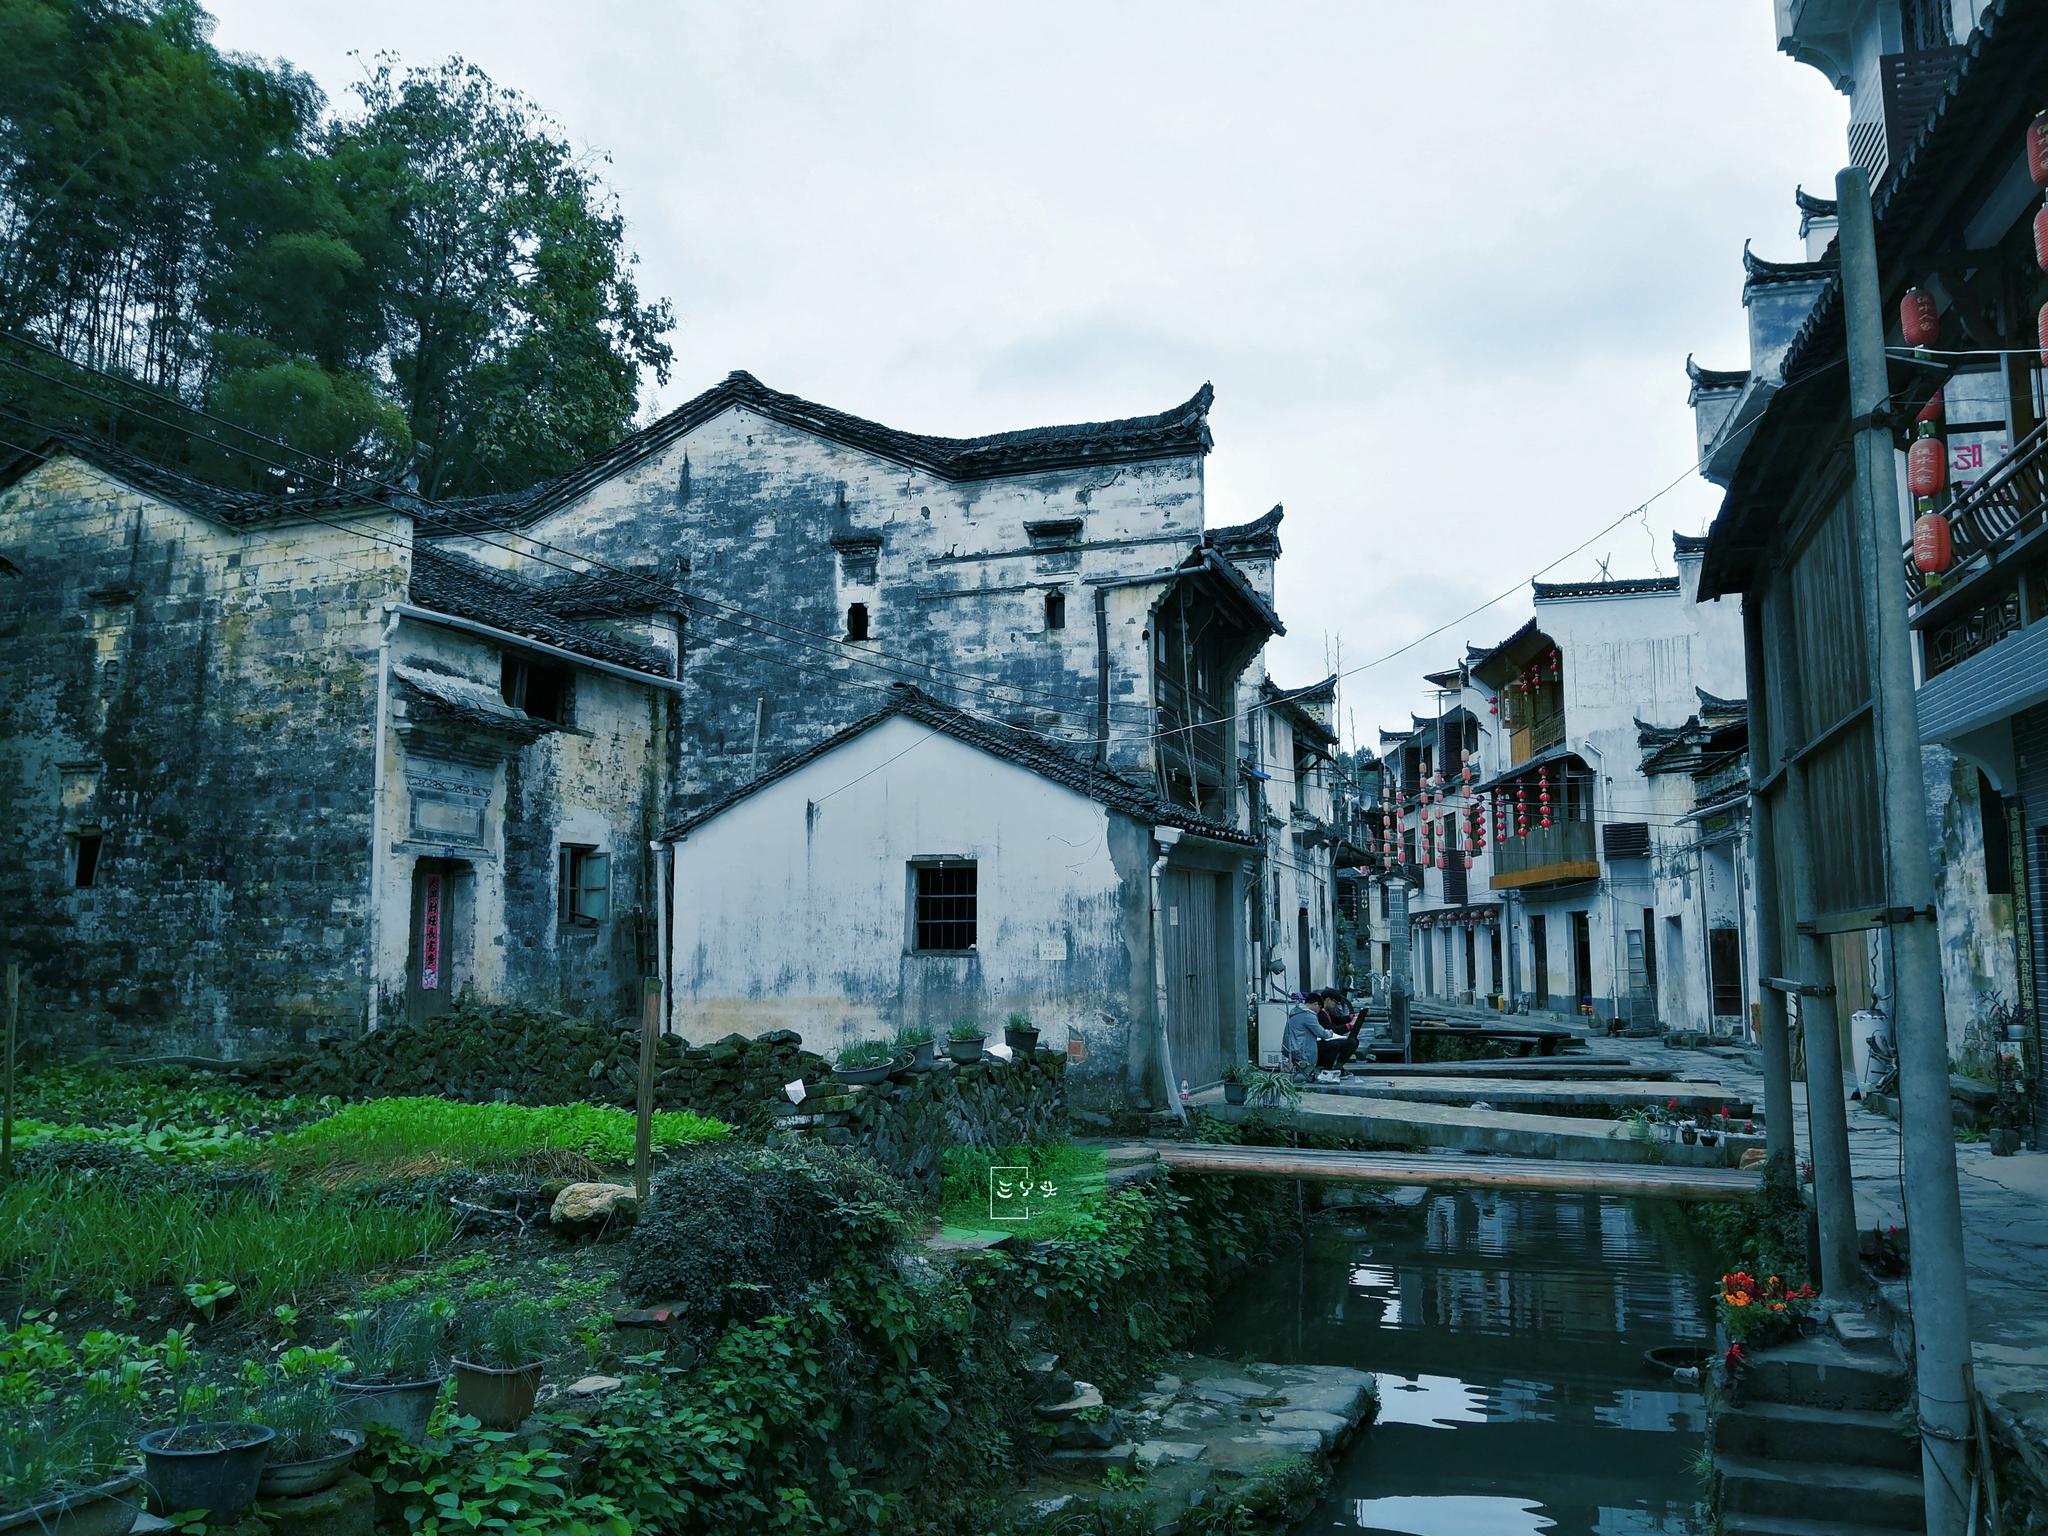 中国最美乡村婺源里的李坑村,保存中国最美廊桥和婺源最古老拱桥